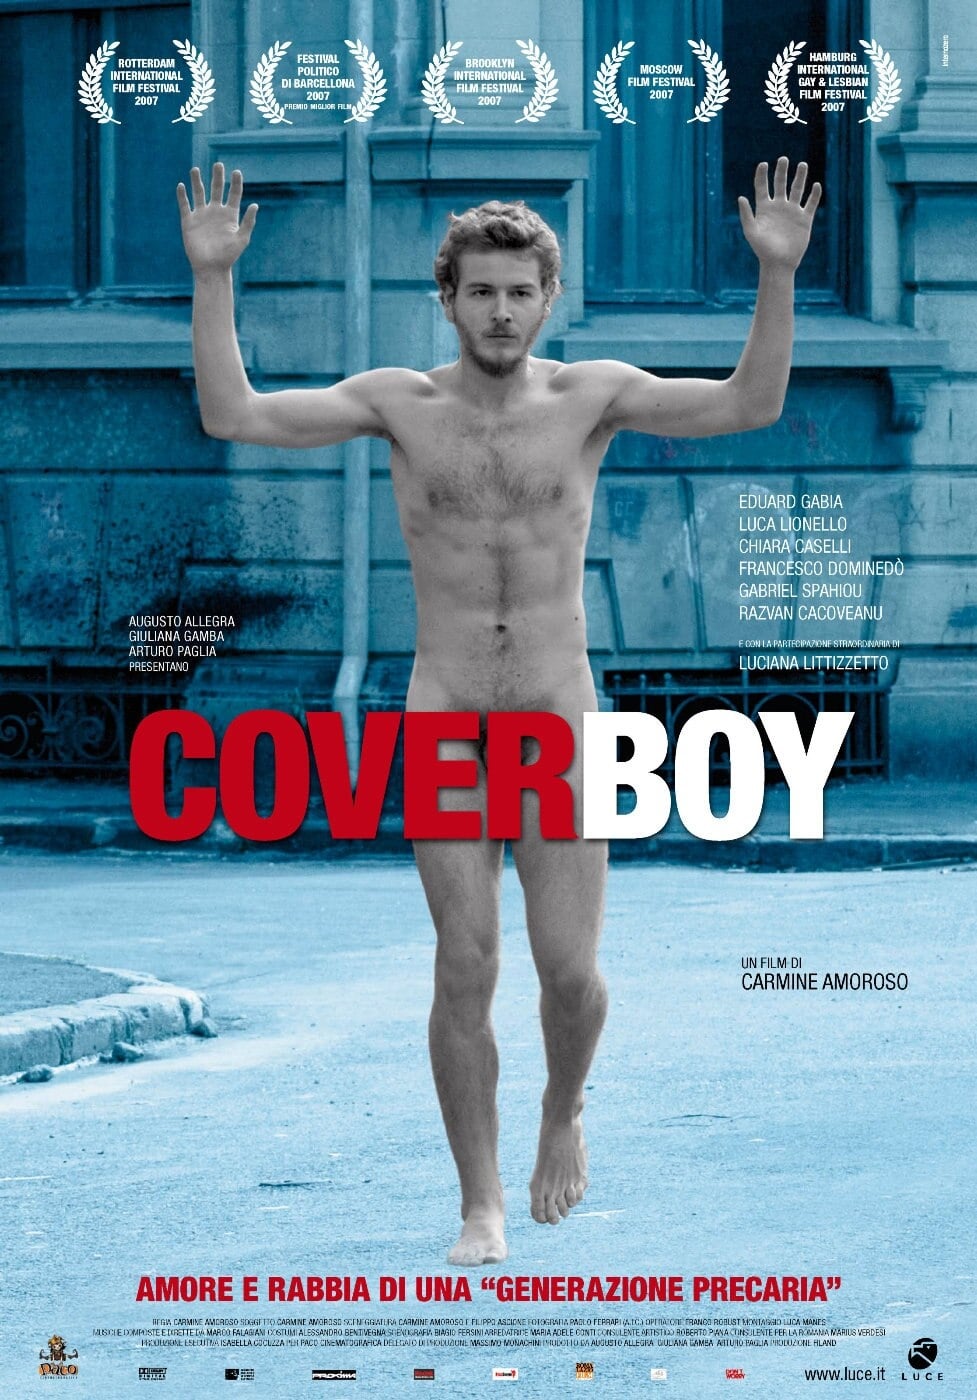 Cover boy: L'ultima rivoluzione (2008)